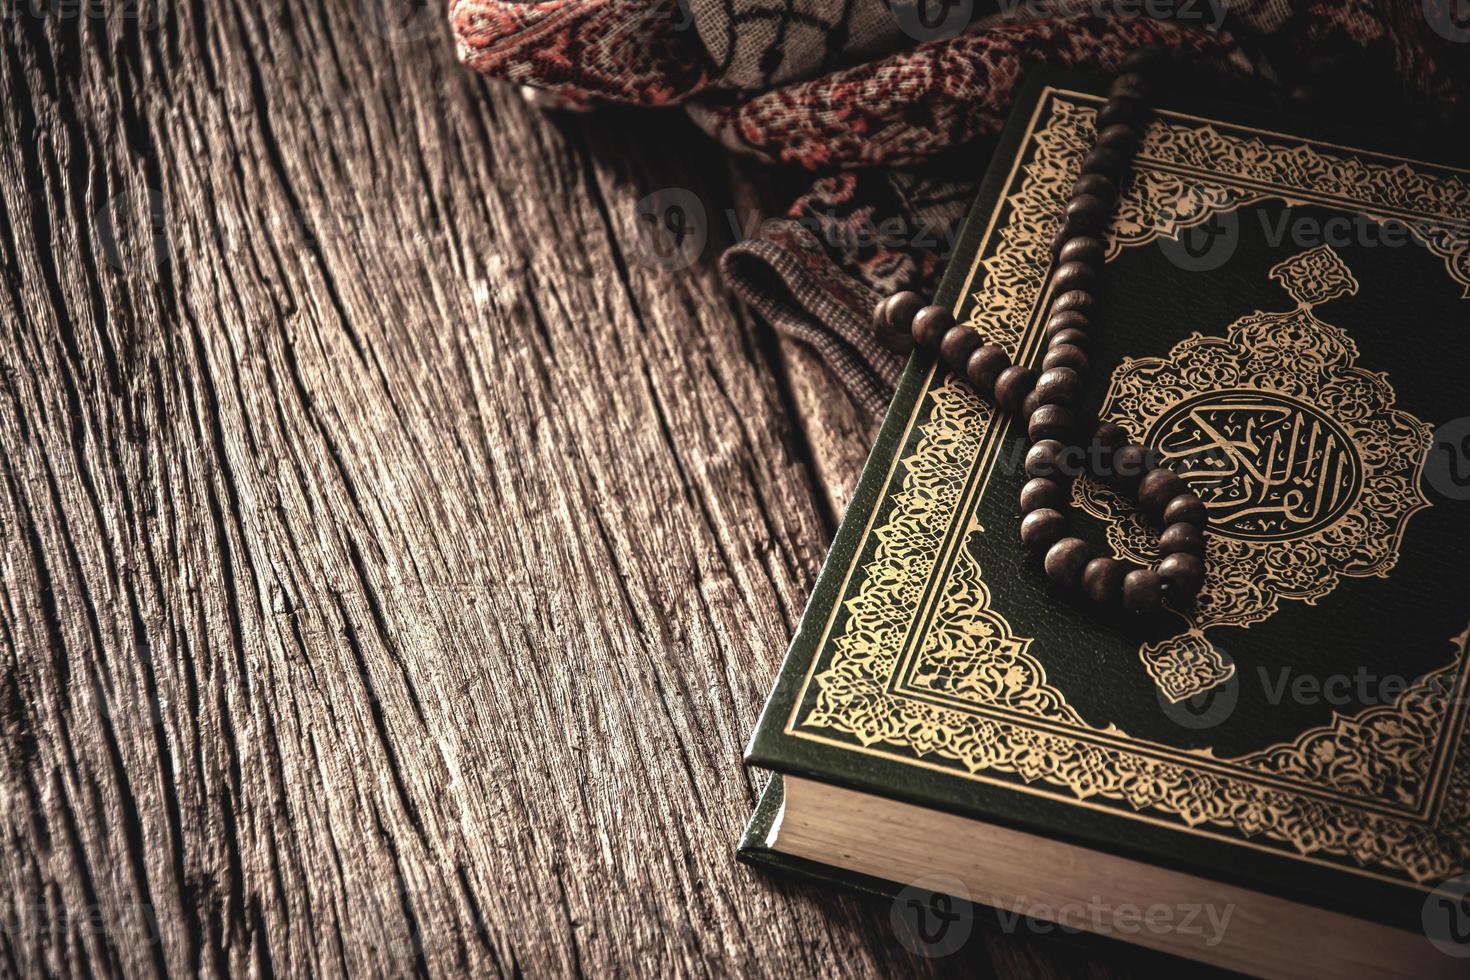 Corano libro sacro dei musulmani oggetto pubblico di tutti i musulmani sul tavolo, natura morta. foto